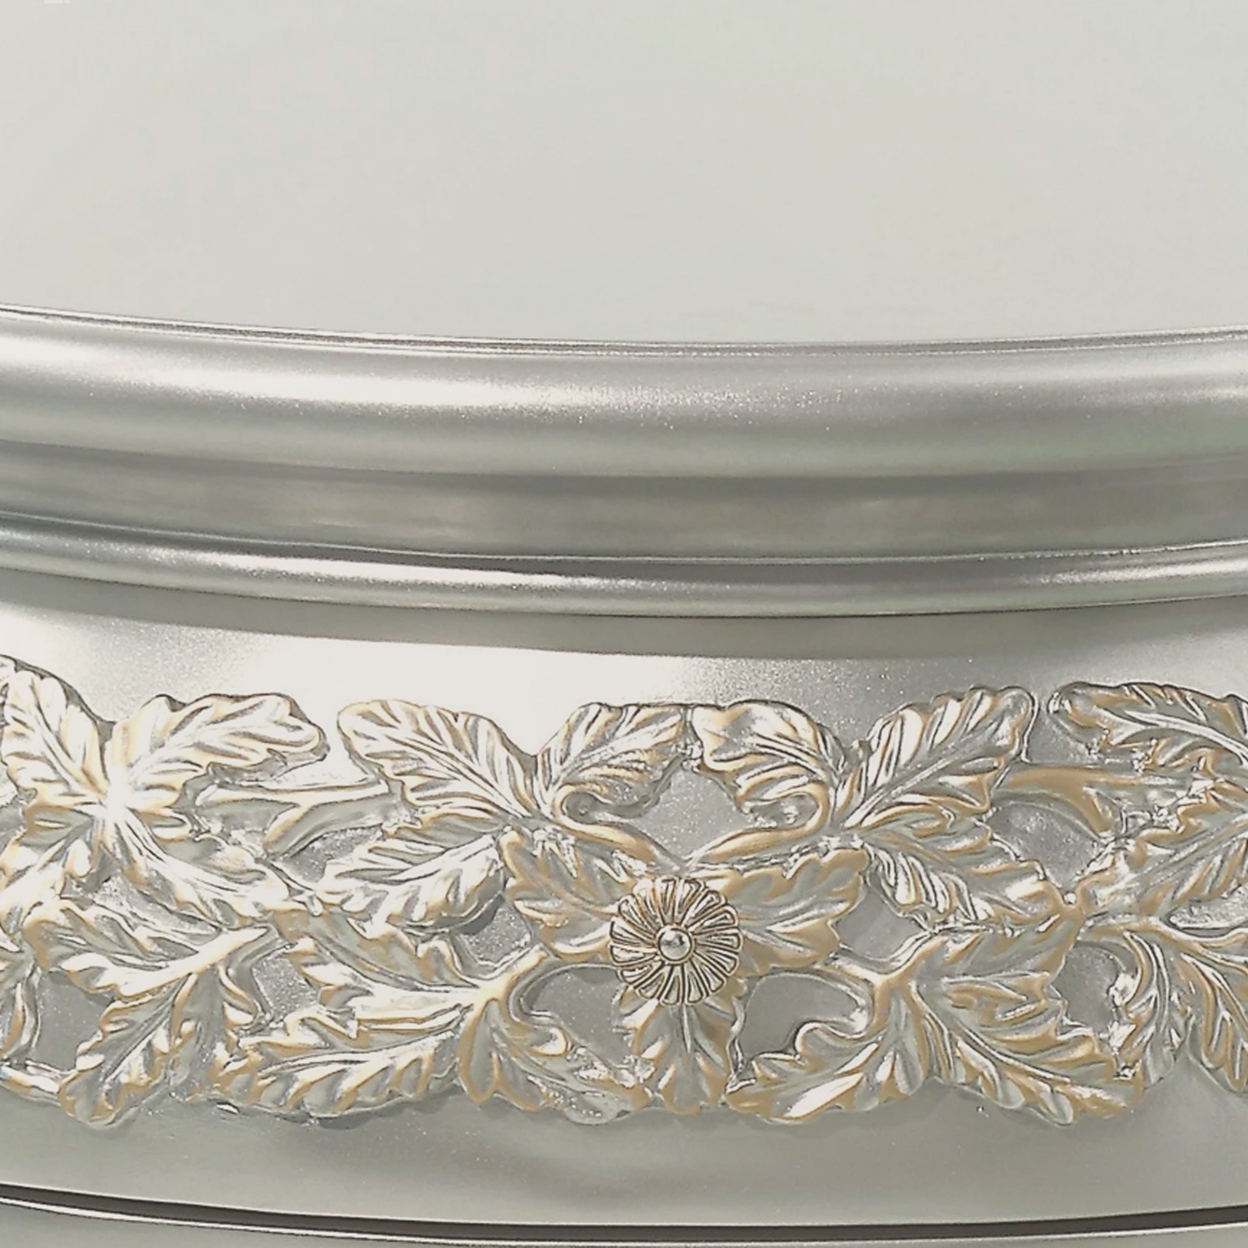 Deneb 30 Inch Luxury Round Nightstand, Gold Floral Motifs, Vintage Silver- Saltoro Sherpi